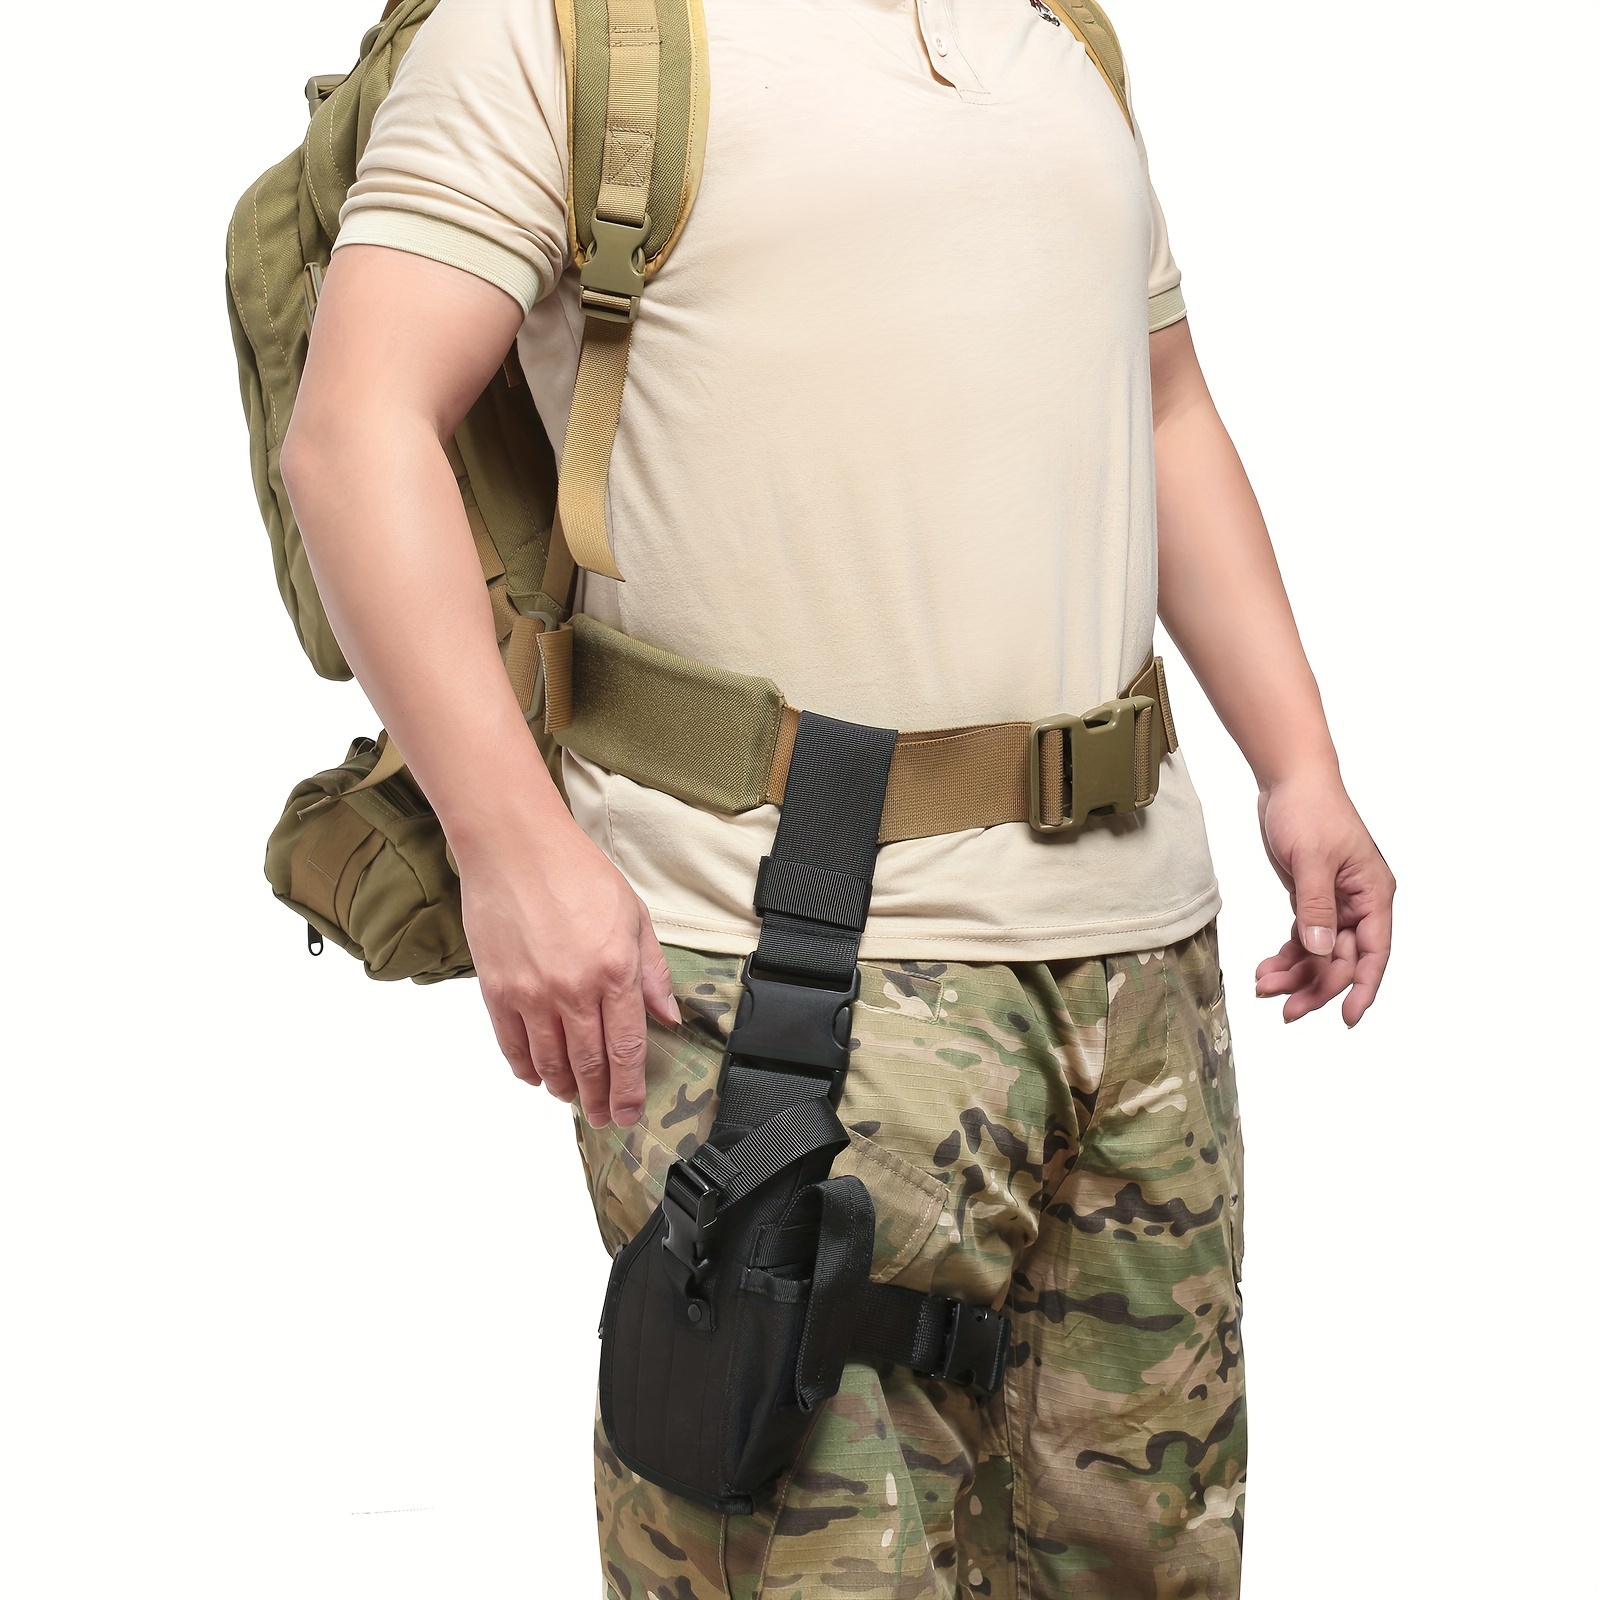 Drop Leg Holster for Right Handed Tactical Thigh Pistol Gun Holster Leg  Harness